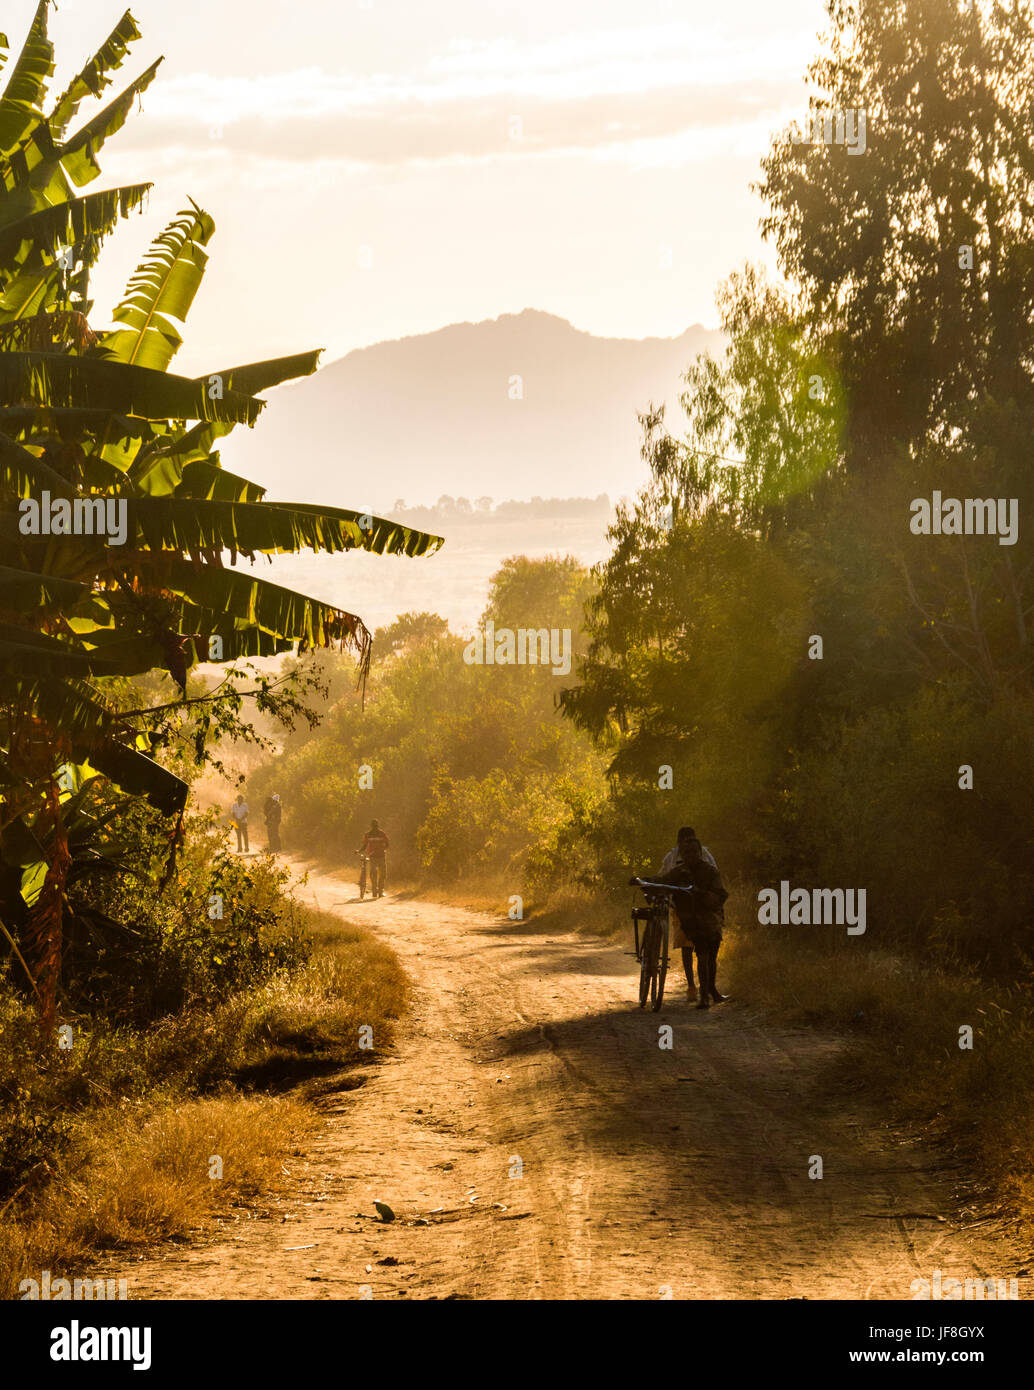 Persone che viaggiano spingendo le biciclette su una strada sterrata nei pressi del villaggio rurale di Tsumba, Malawi, Africa nella regolazione del sole Foto Stock